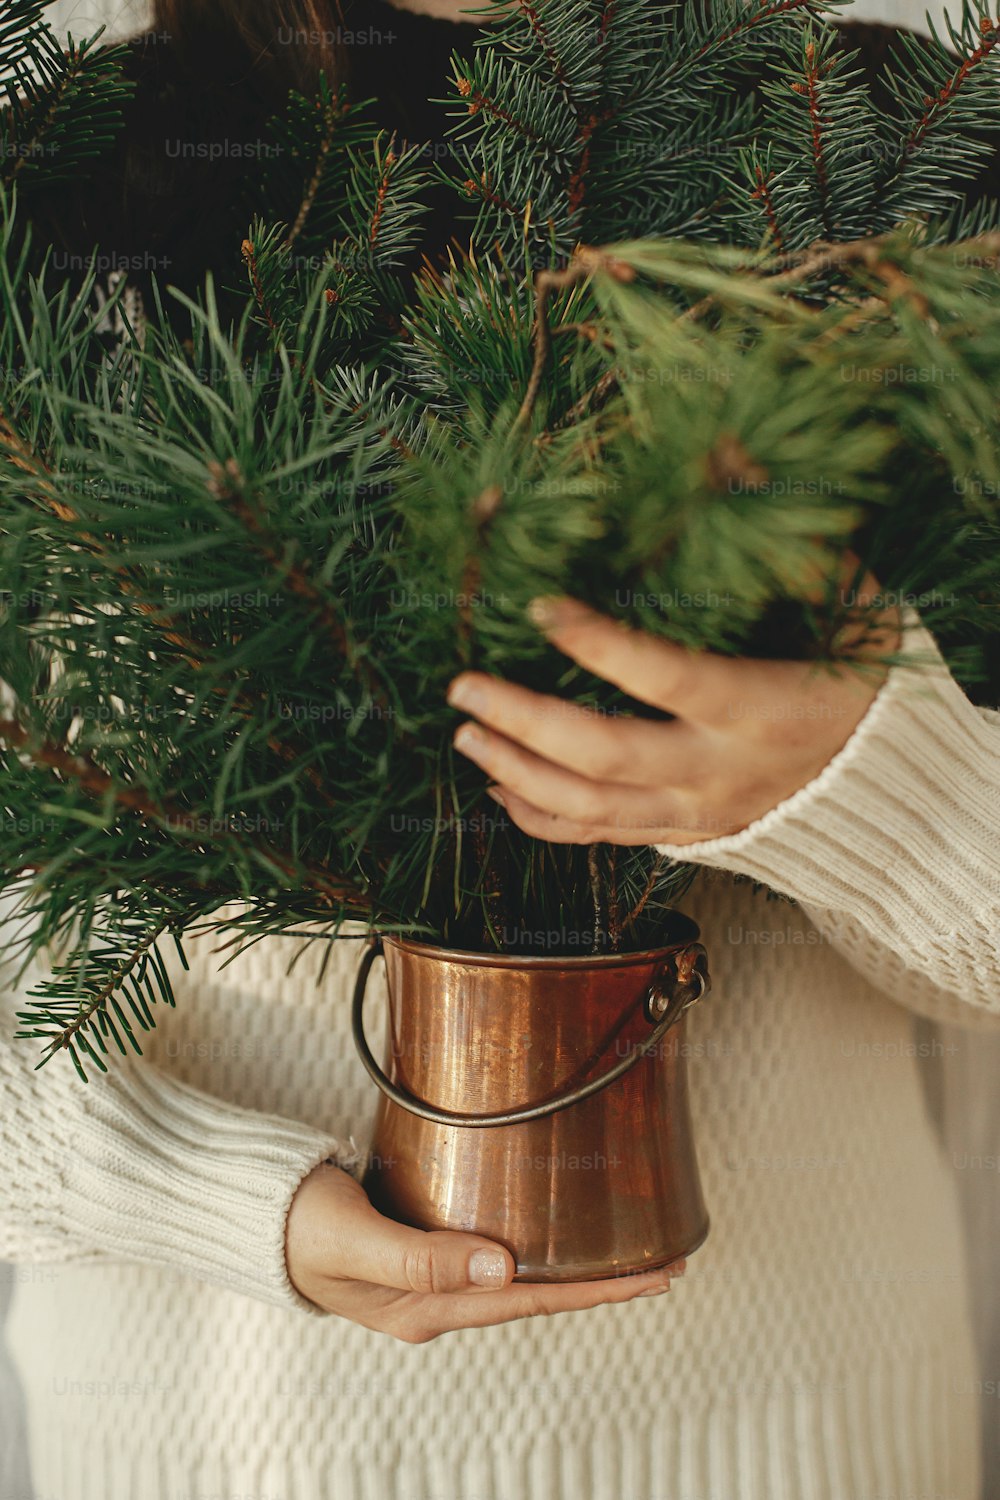 スタイリッシュで居心地の良いセーターを着た女性が、素朴な部屋で松とモミの枝が描かれたヴィンテージの花瓶を手にし、トリミングされた景色を収めています。冬休みの準備。メリークリスマス！